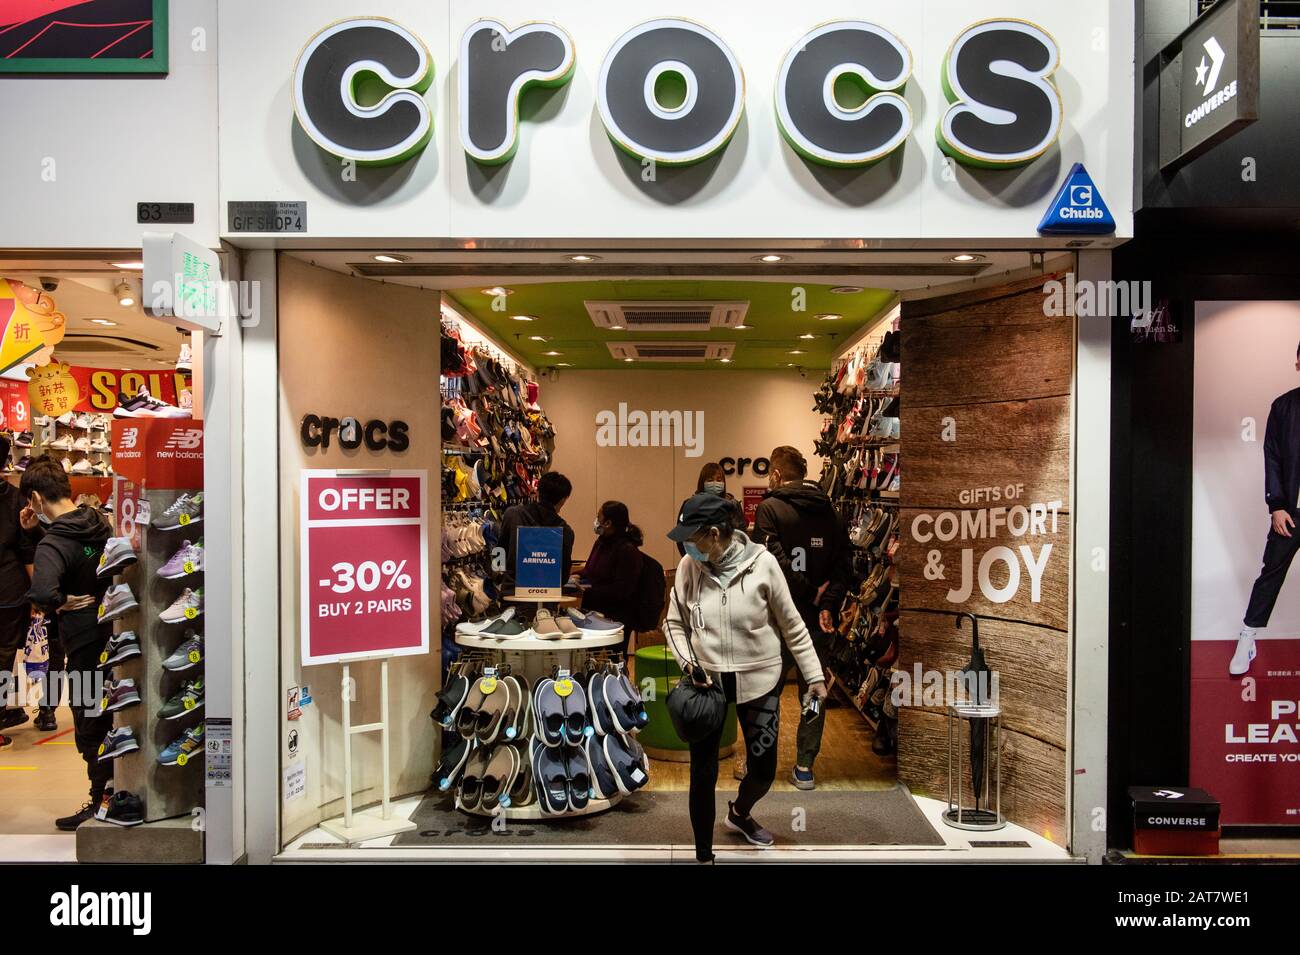 Crocs store immagini e fotografie stock ad alta risoluzione - Alamy